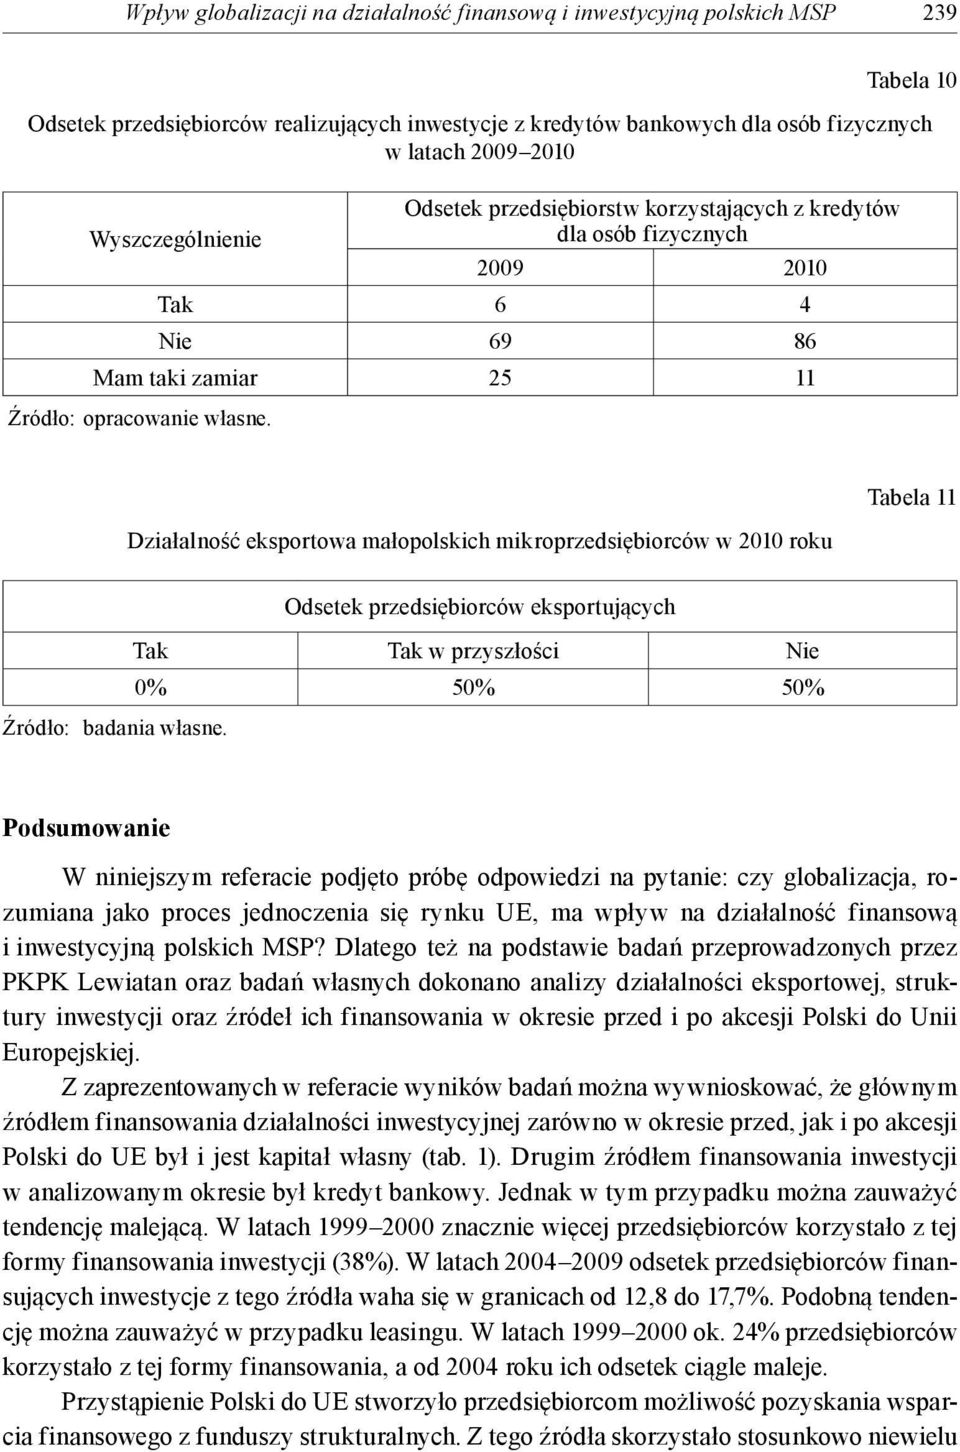 Działalność eksportowa małopolskich mikroprzedsiębiorców w 2010 roku Tabela 11 Odsetek przedsiębiorców eksportujących Tak Tak w przyszłości Nie 0% 50% 50% Źródło: badania własne.